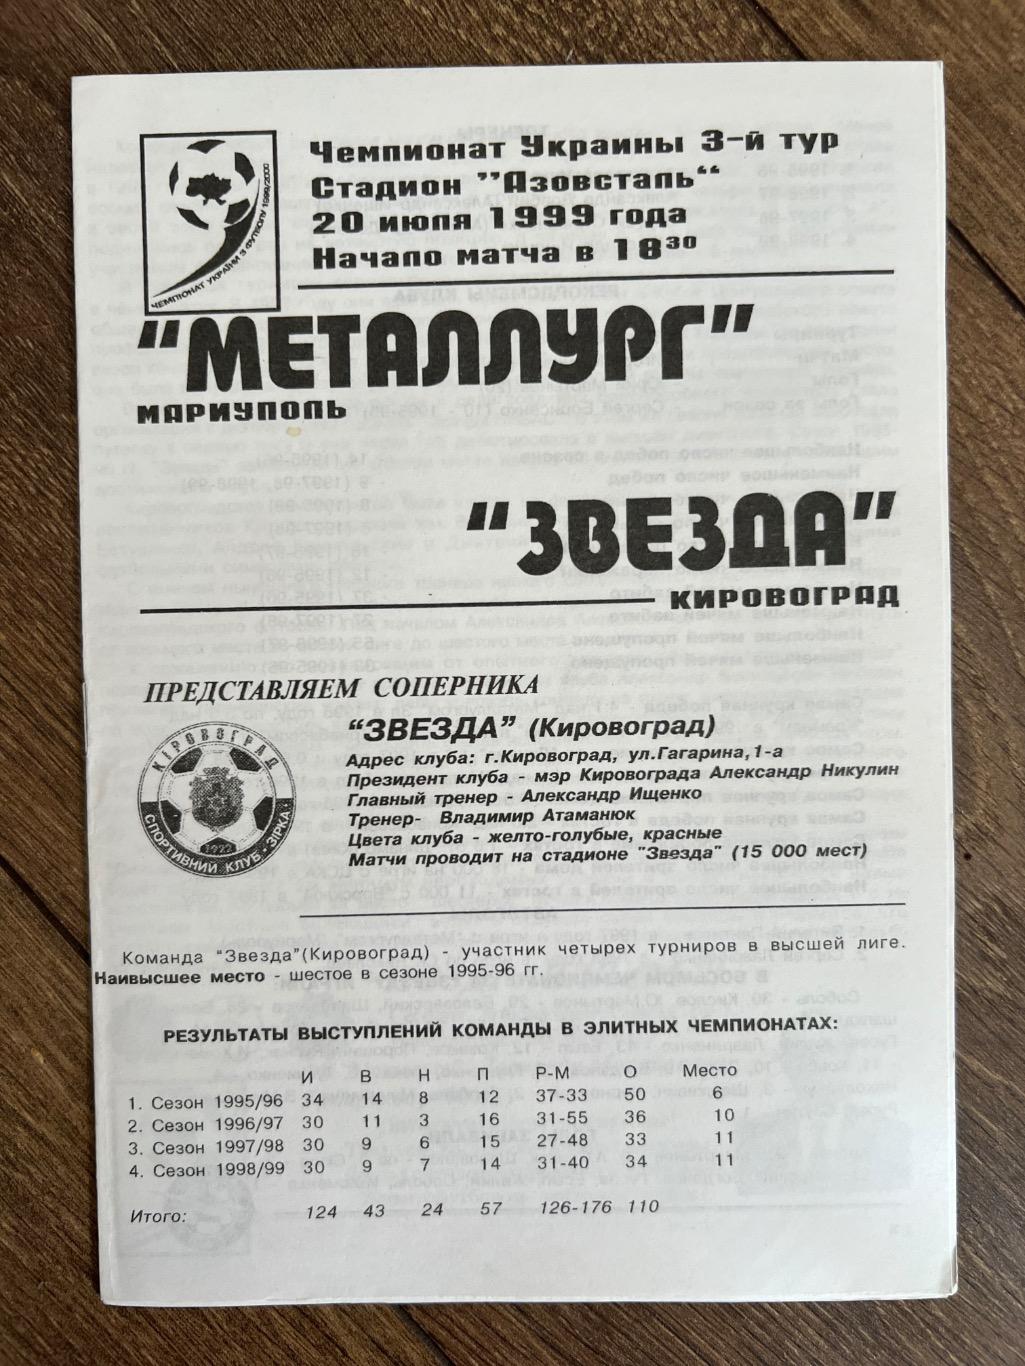 Металлург Мариуполь - Звезда Кировоград 1999-2000